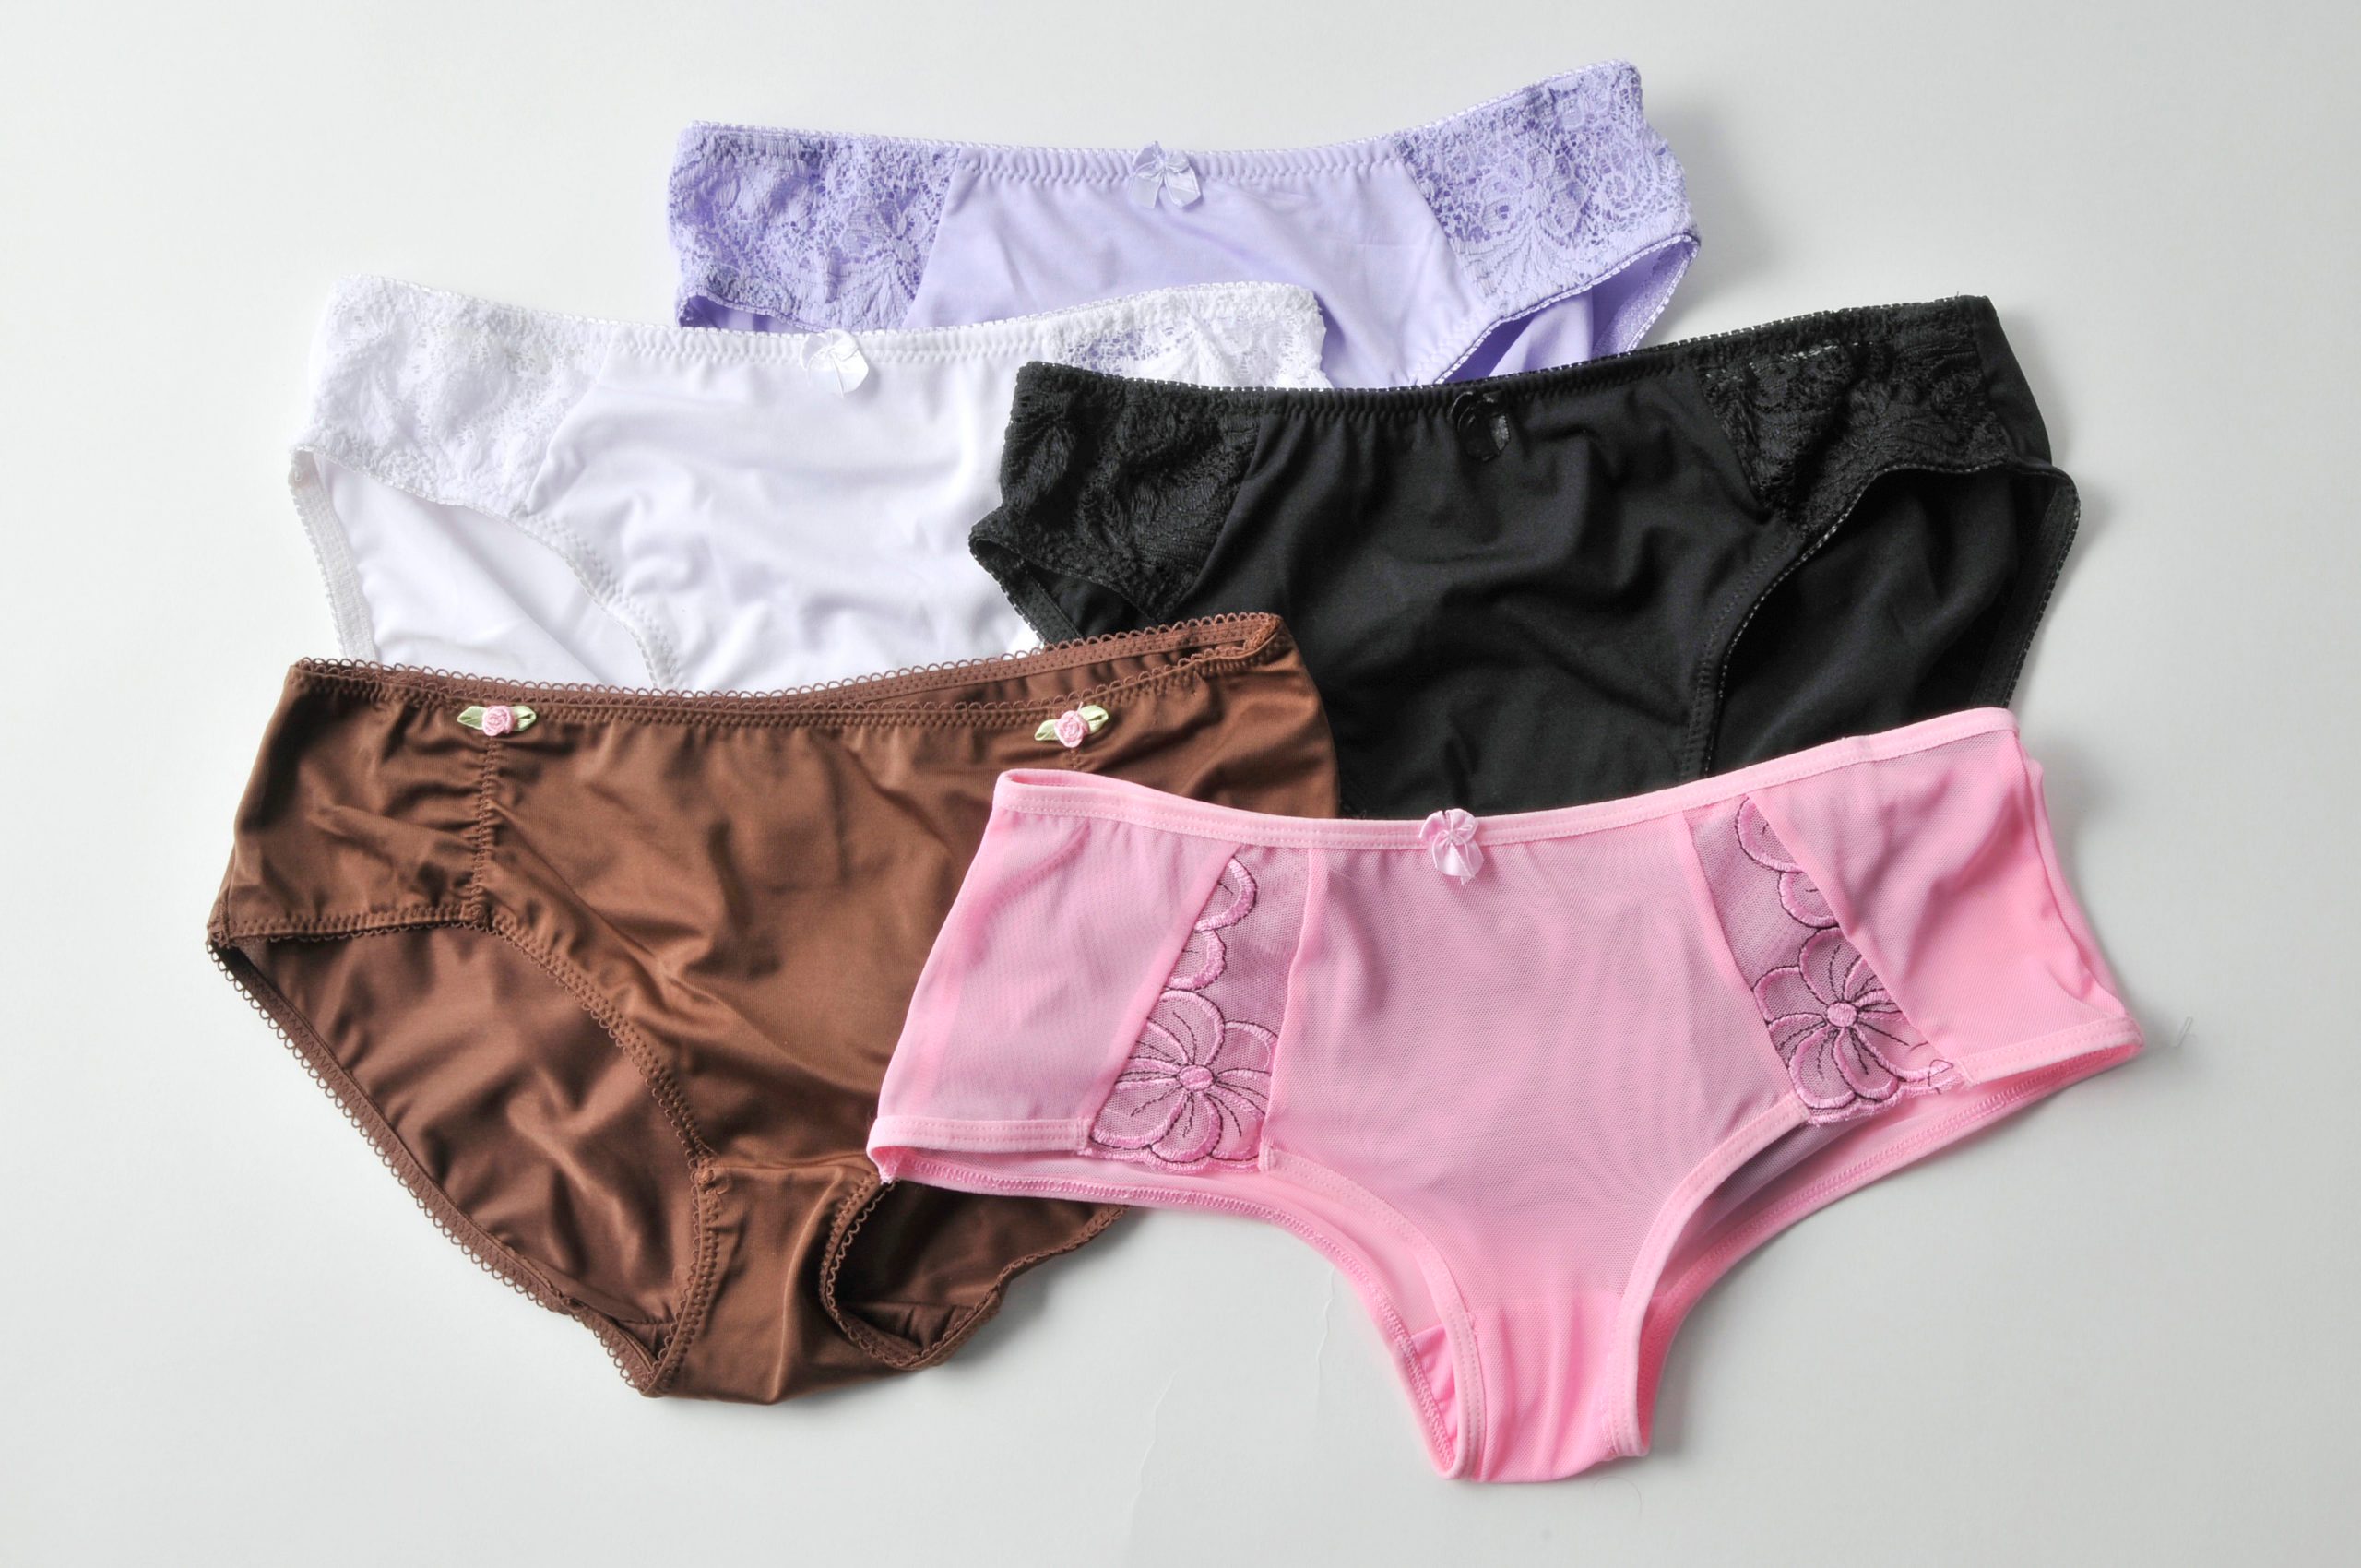 Which Women's Underwear Brand Is Best? – ecoetosha